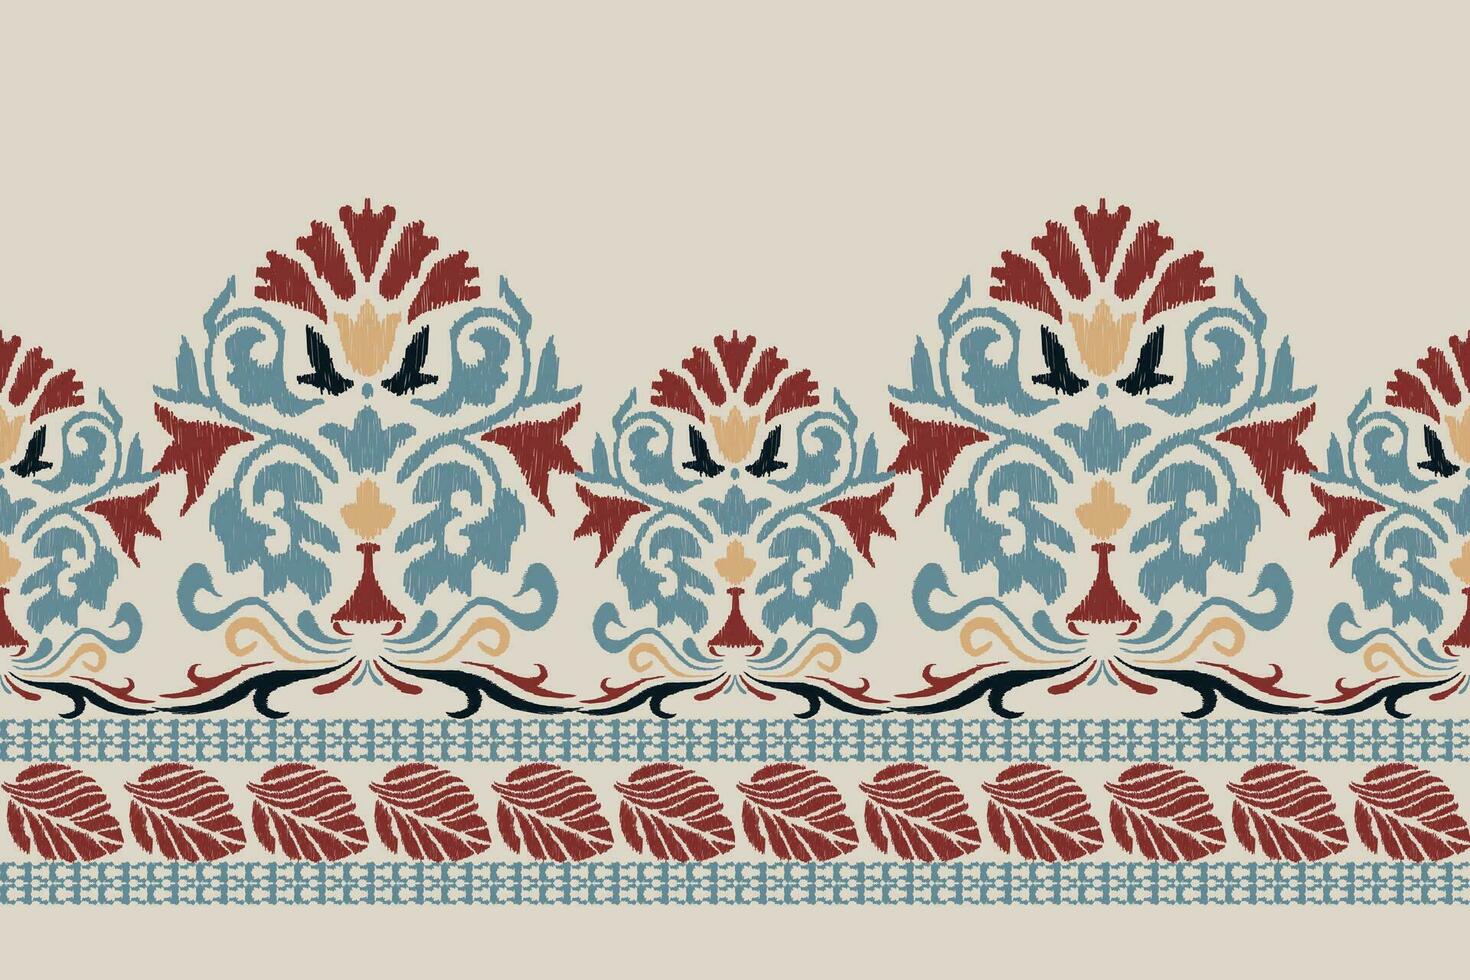 ikat floral paisley broderie sur gris background.ikat ethnique Oriental modèle traditionnel.aztèque style abstrait vecteur illustration.design pour texture, tissu, vêtements, emballage, décoration, paréo, écharpe.